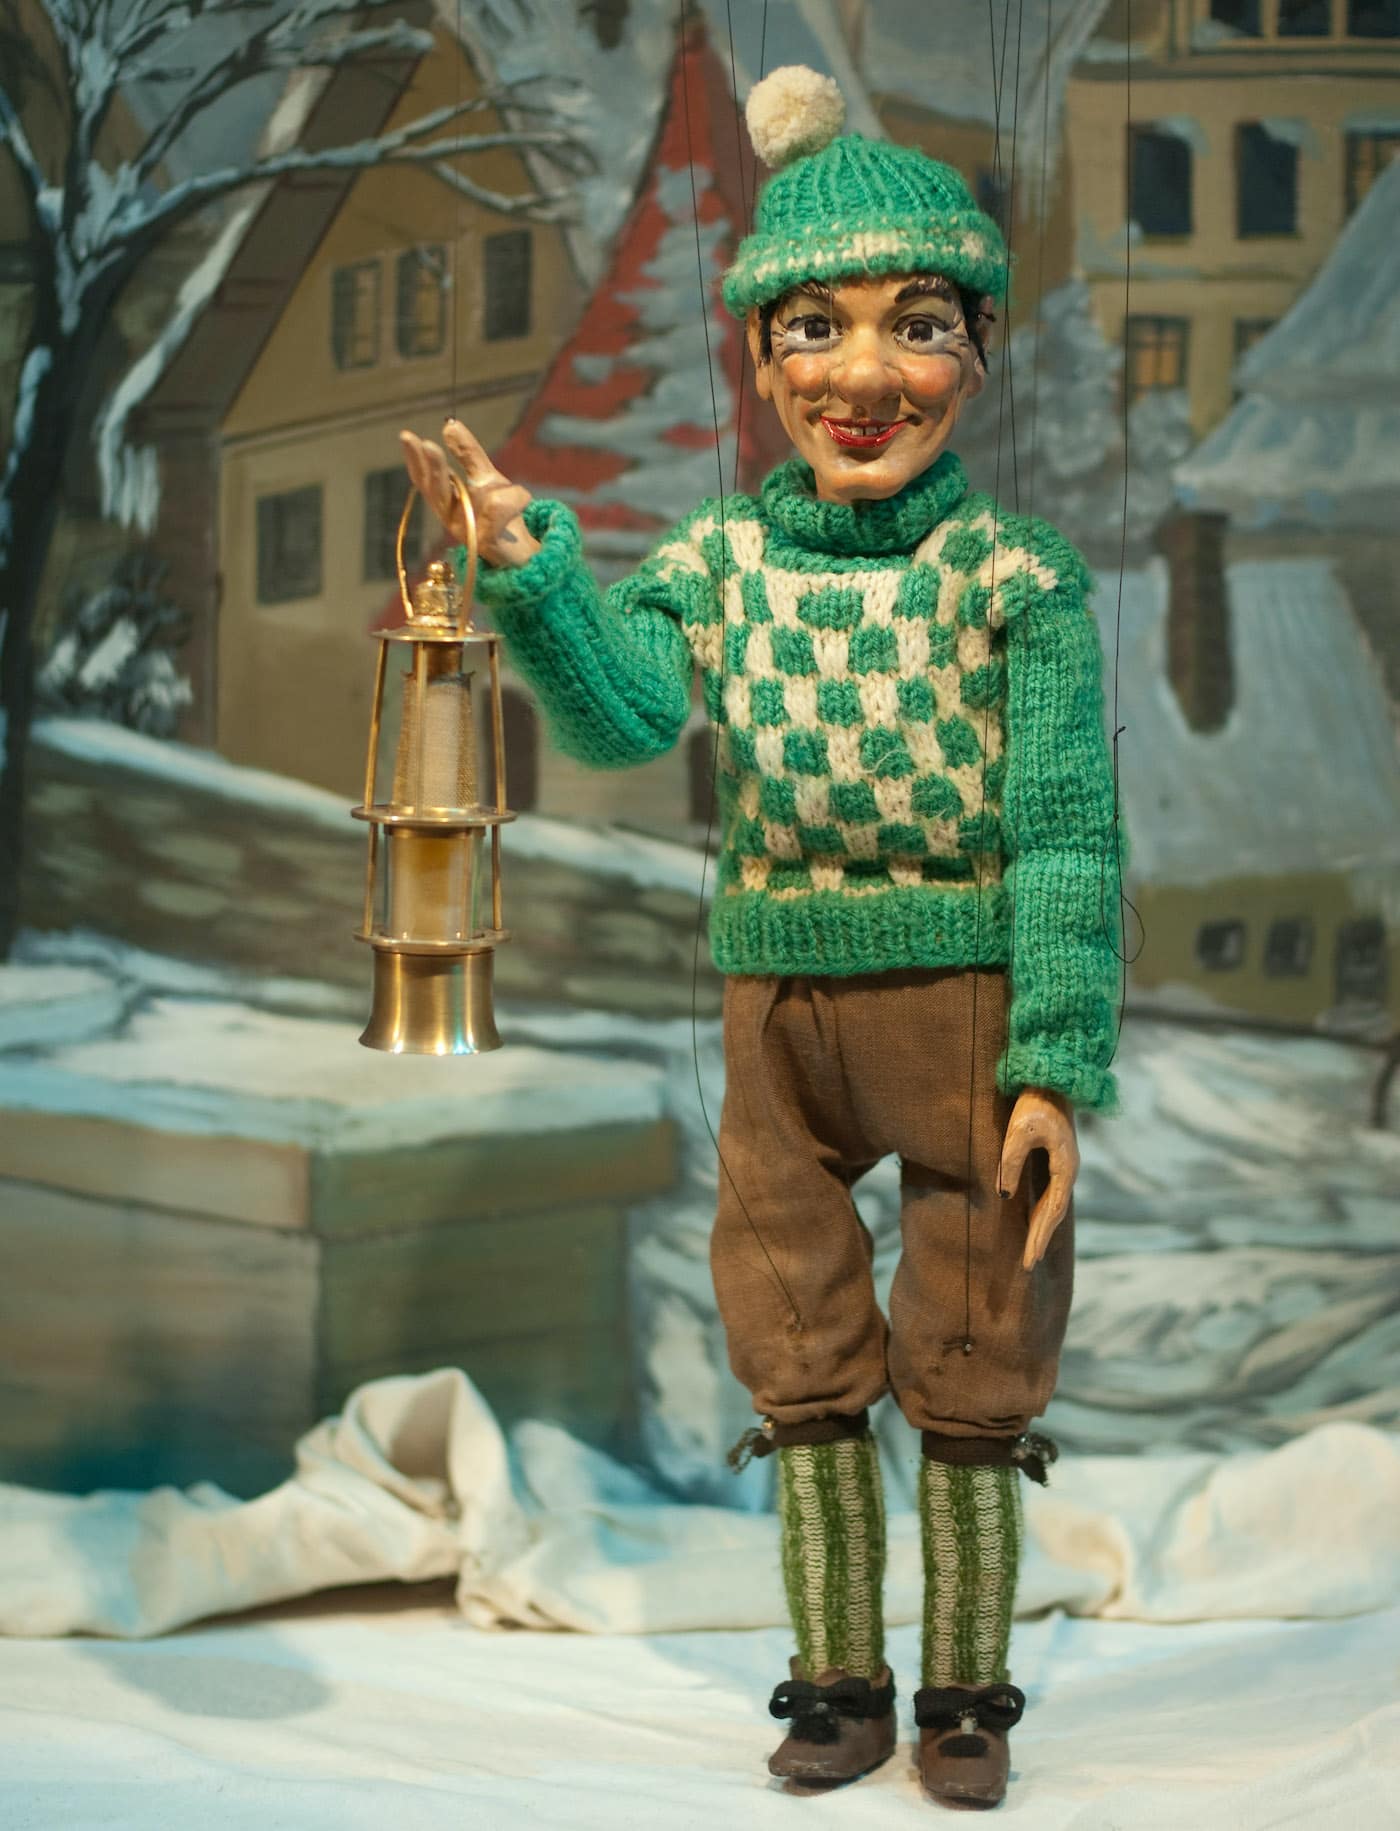 Die Wunschlaterne kommt wie jedes Jahr zur Weihnachtszeit auf den Spielplan des Marionettentheaters Bille nun München Für Kinder // HIMBEER